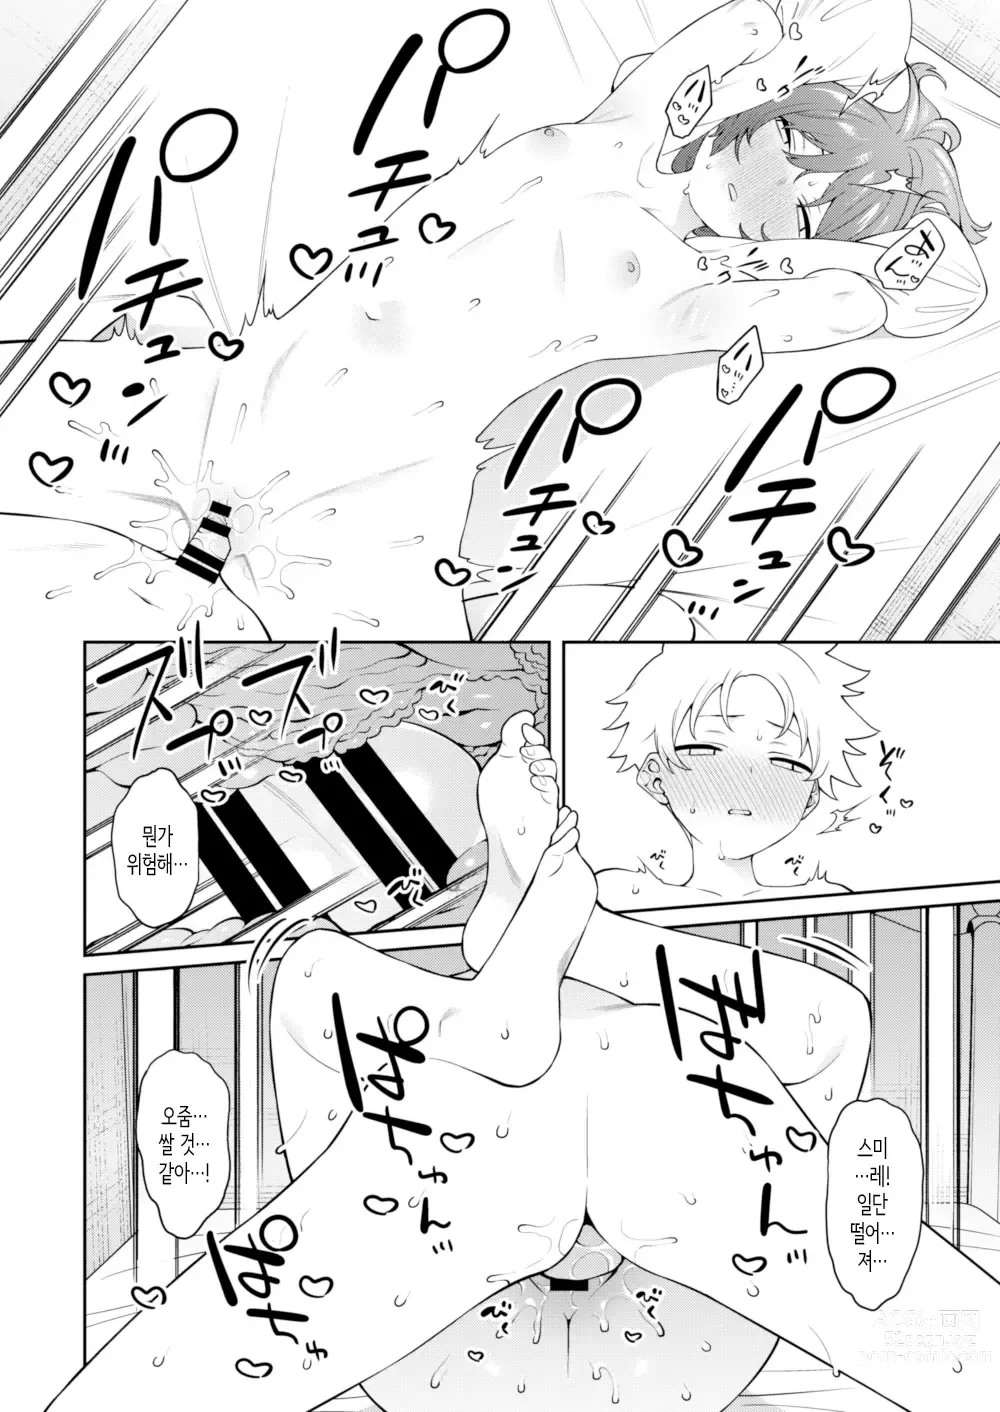 Page 25 of doujinshi 스미레 쨩은 머리가 좋다.